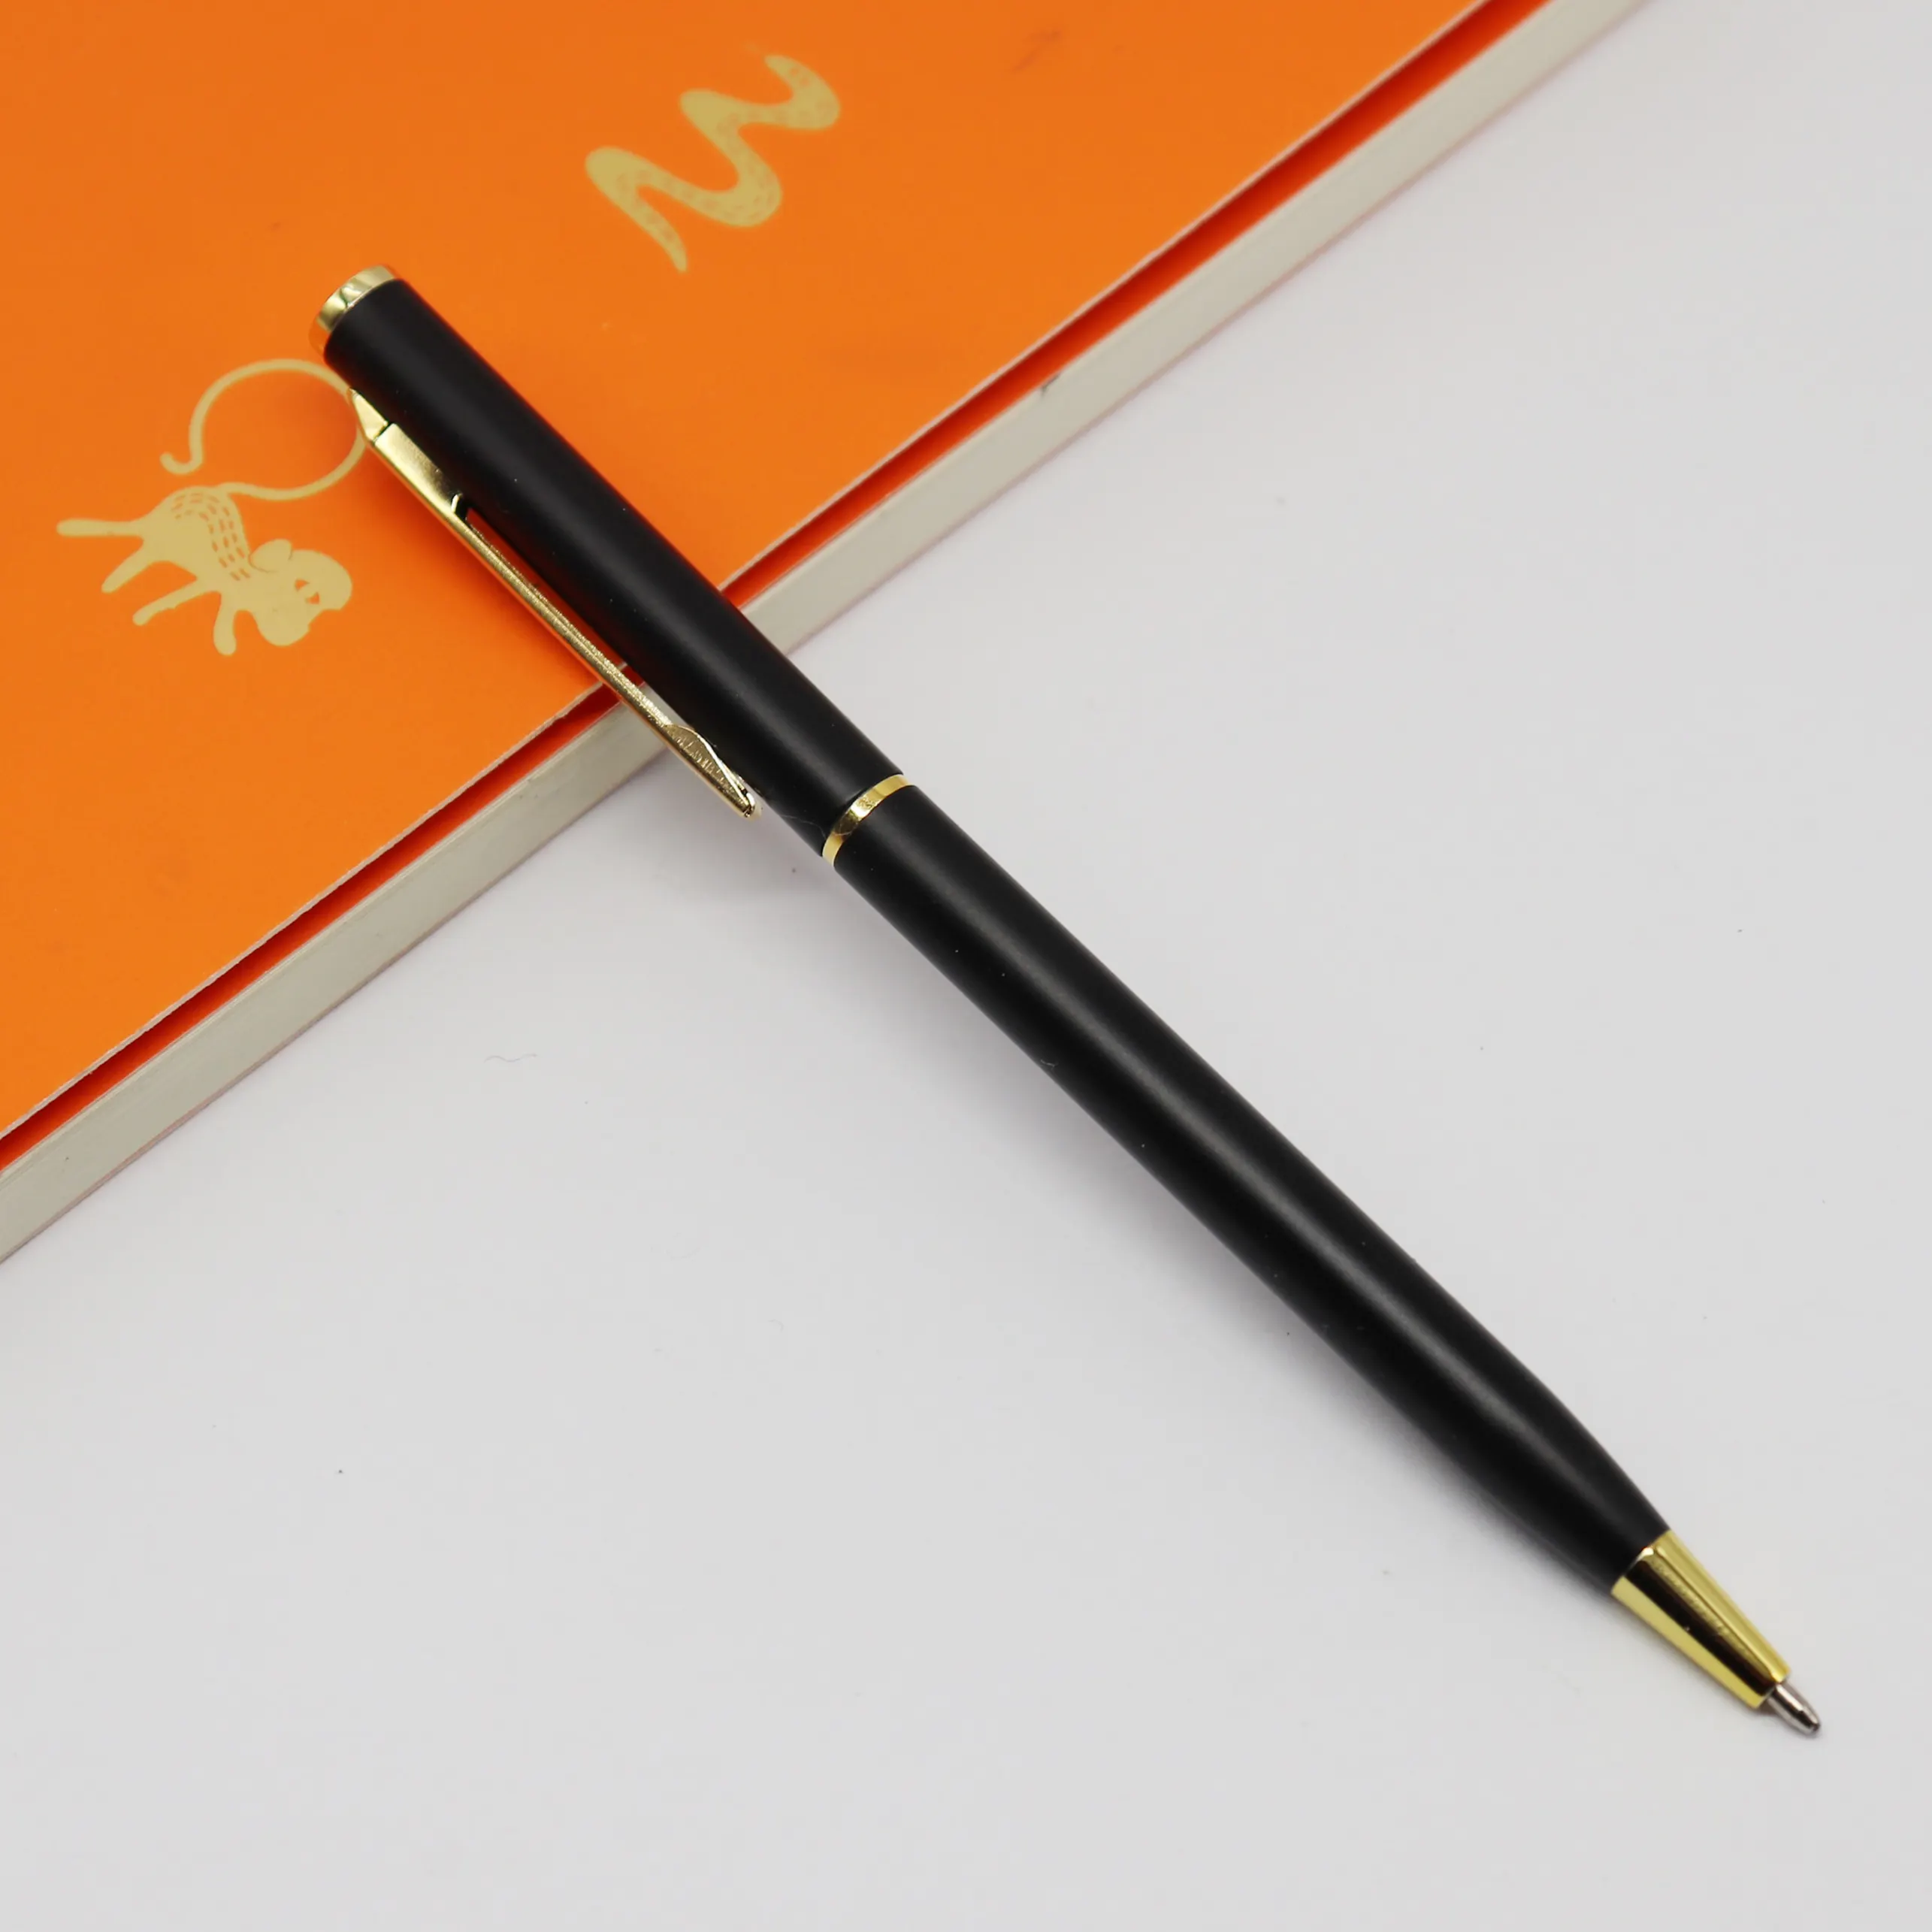 Özel tasarım yaygın olarak kullanılan ucuz büküm seti Metal kalem tükenmez